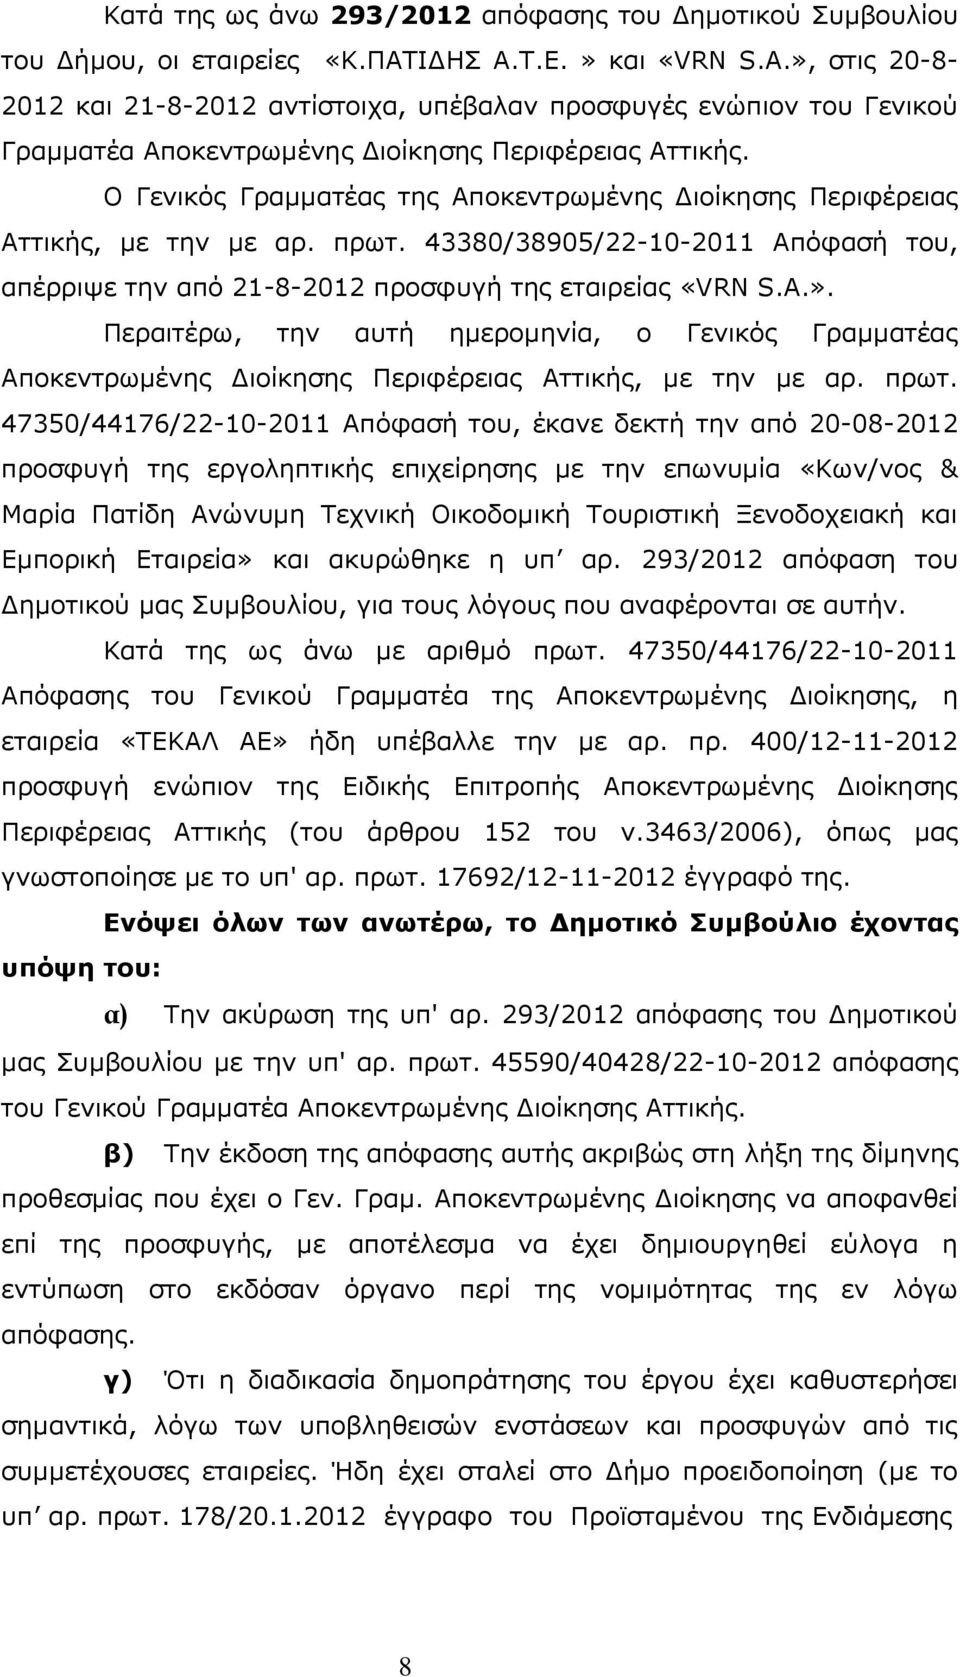 Ο Γενικός Γραμματέας της Αποκεντρωμένης Διοίκησης Περιφέρειας Αττικής, με την με αρ. πρωτ. 43380/38905/22-10-2011 Απόφασή του, απέρριψε την από 21-8-2012 προσφυγή της εταιρείας «VRN S.A.».